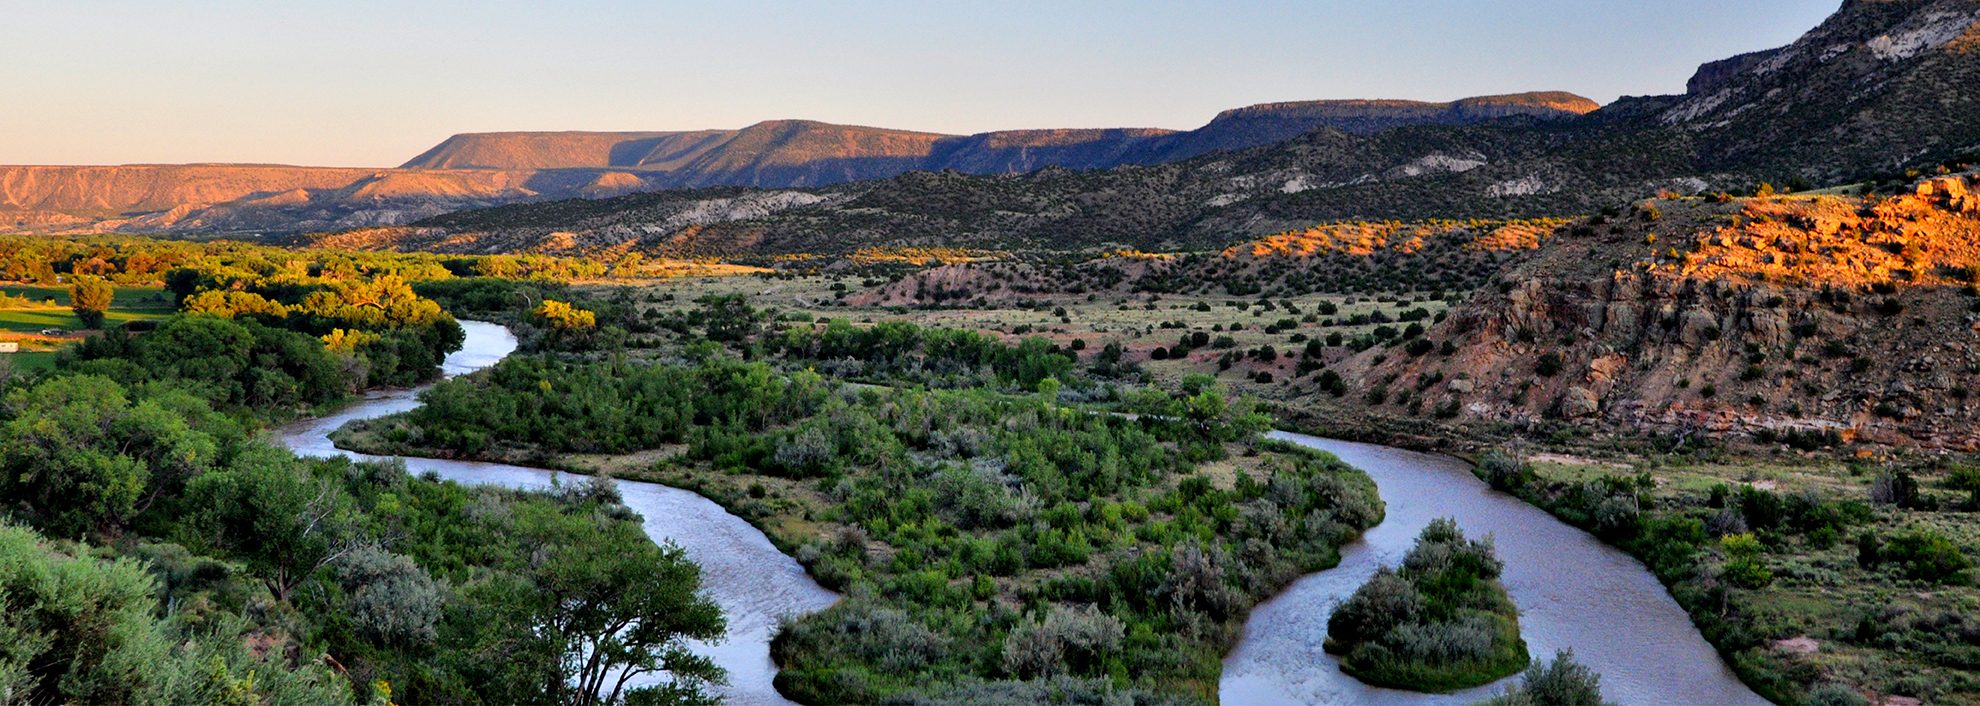 Multicolor landscape of New Mexico.